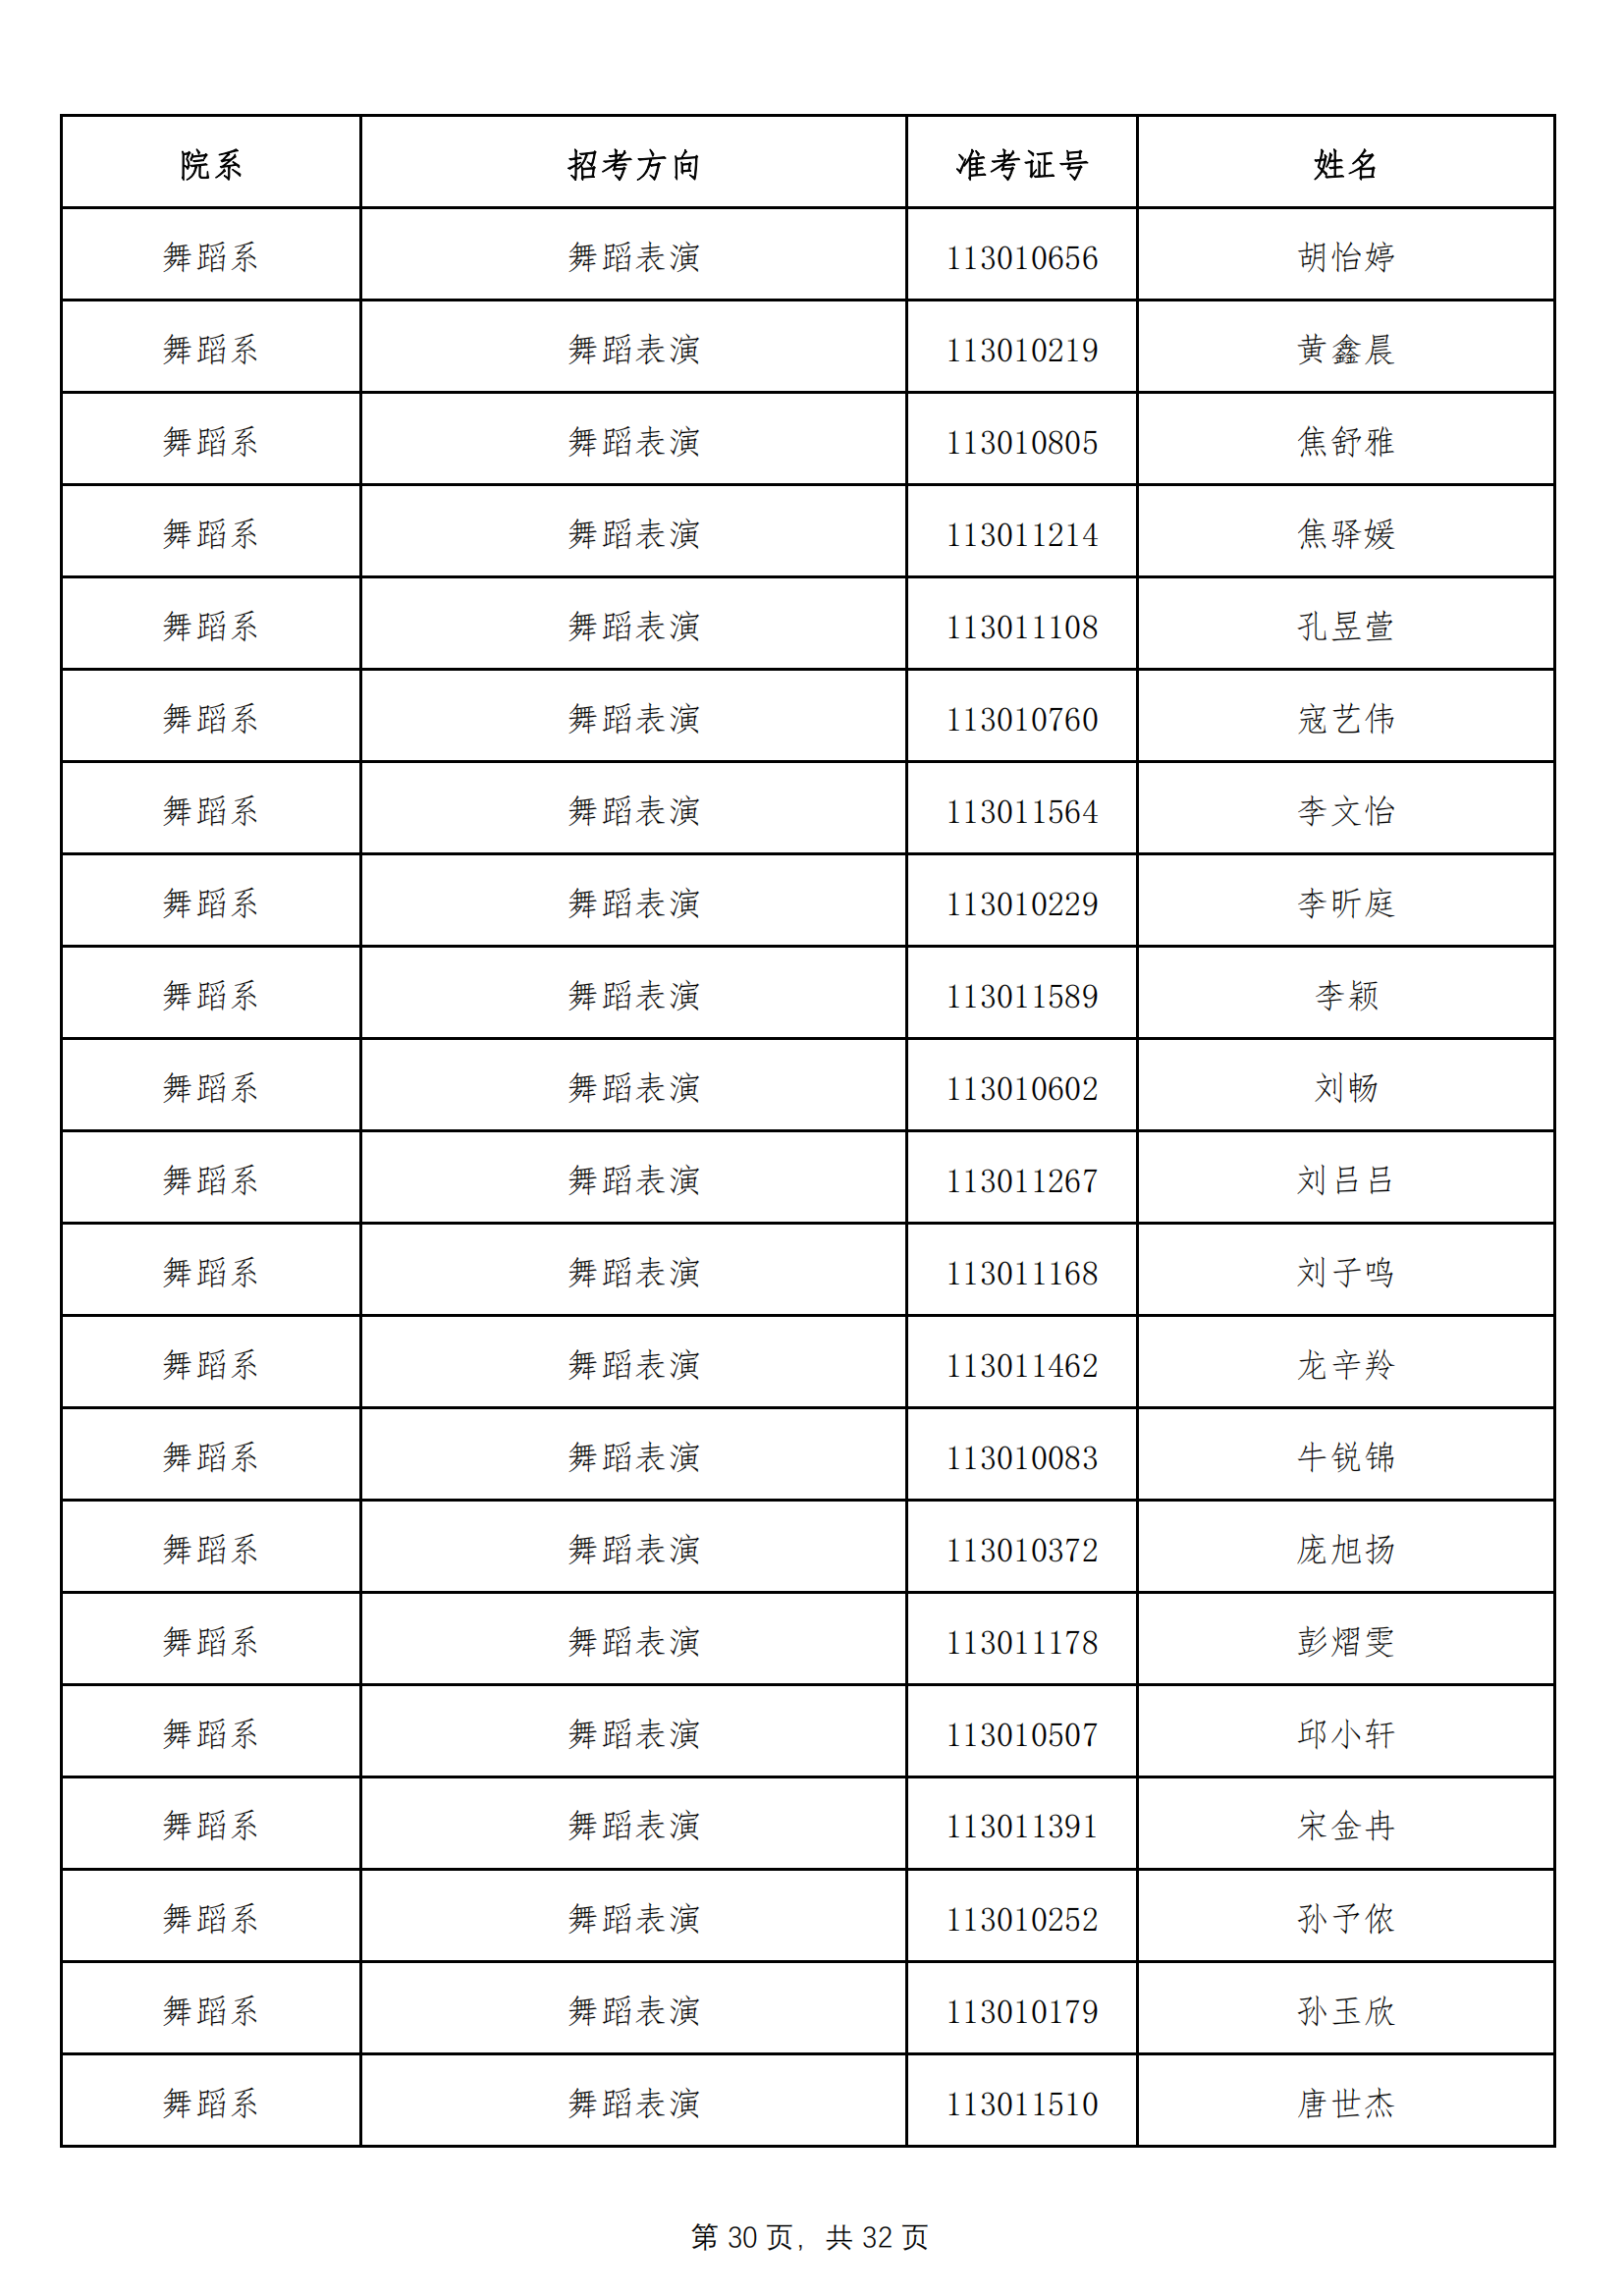 天津音乐学院2022年本科招生拟录取名单 （除上海考生外）_29.png